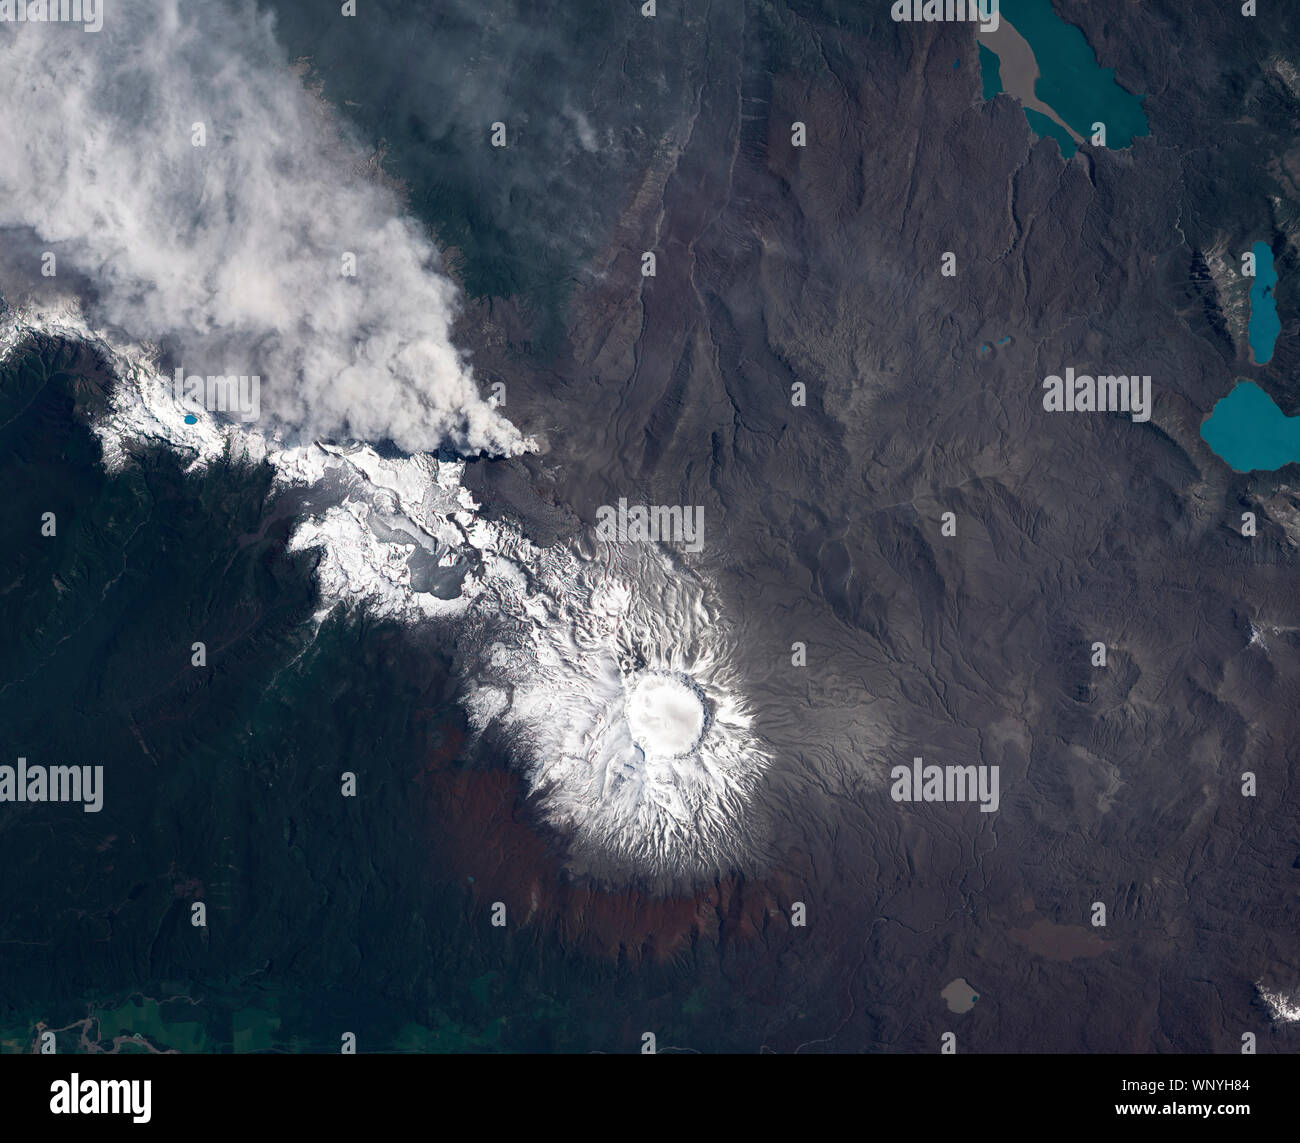 La erupción del volcán Puyehue-Cordón Caulle, Chile, Estados Unidos, 23 de diciembre de 2011, por la NASA/Jesse Allen/DPA Foto de stock